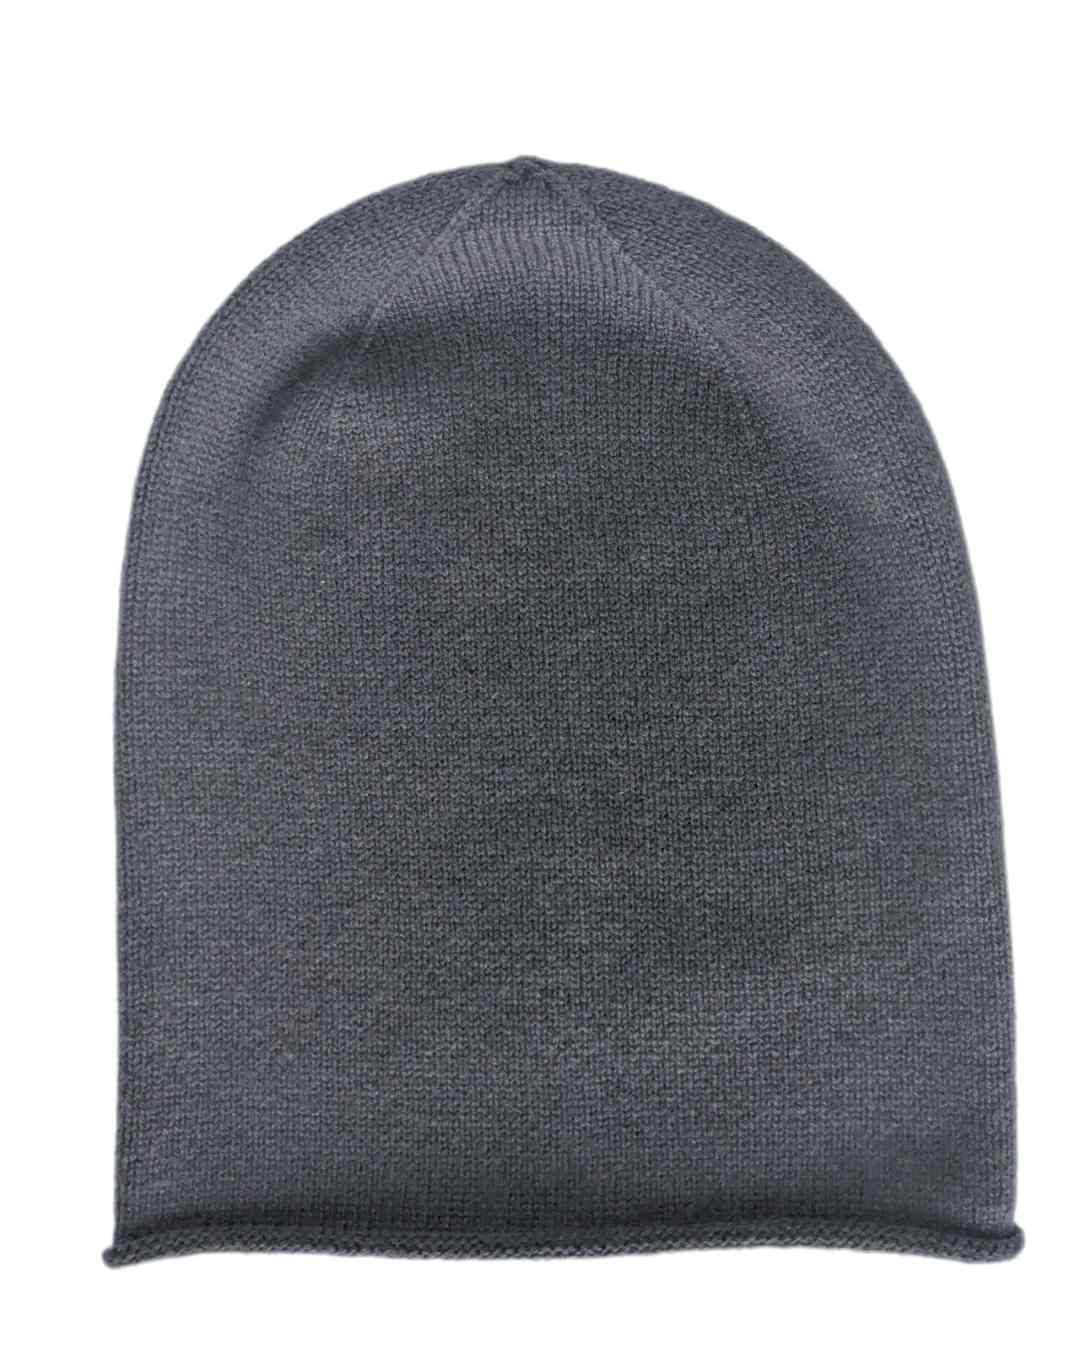 graphite grey cashmere hat ireland